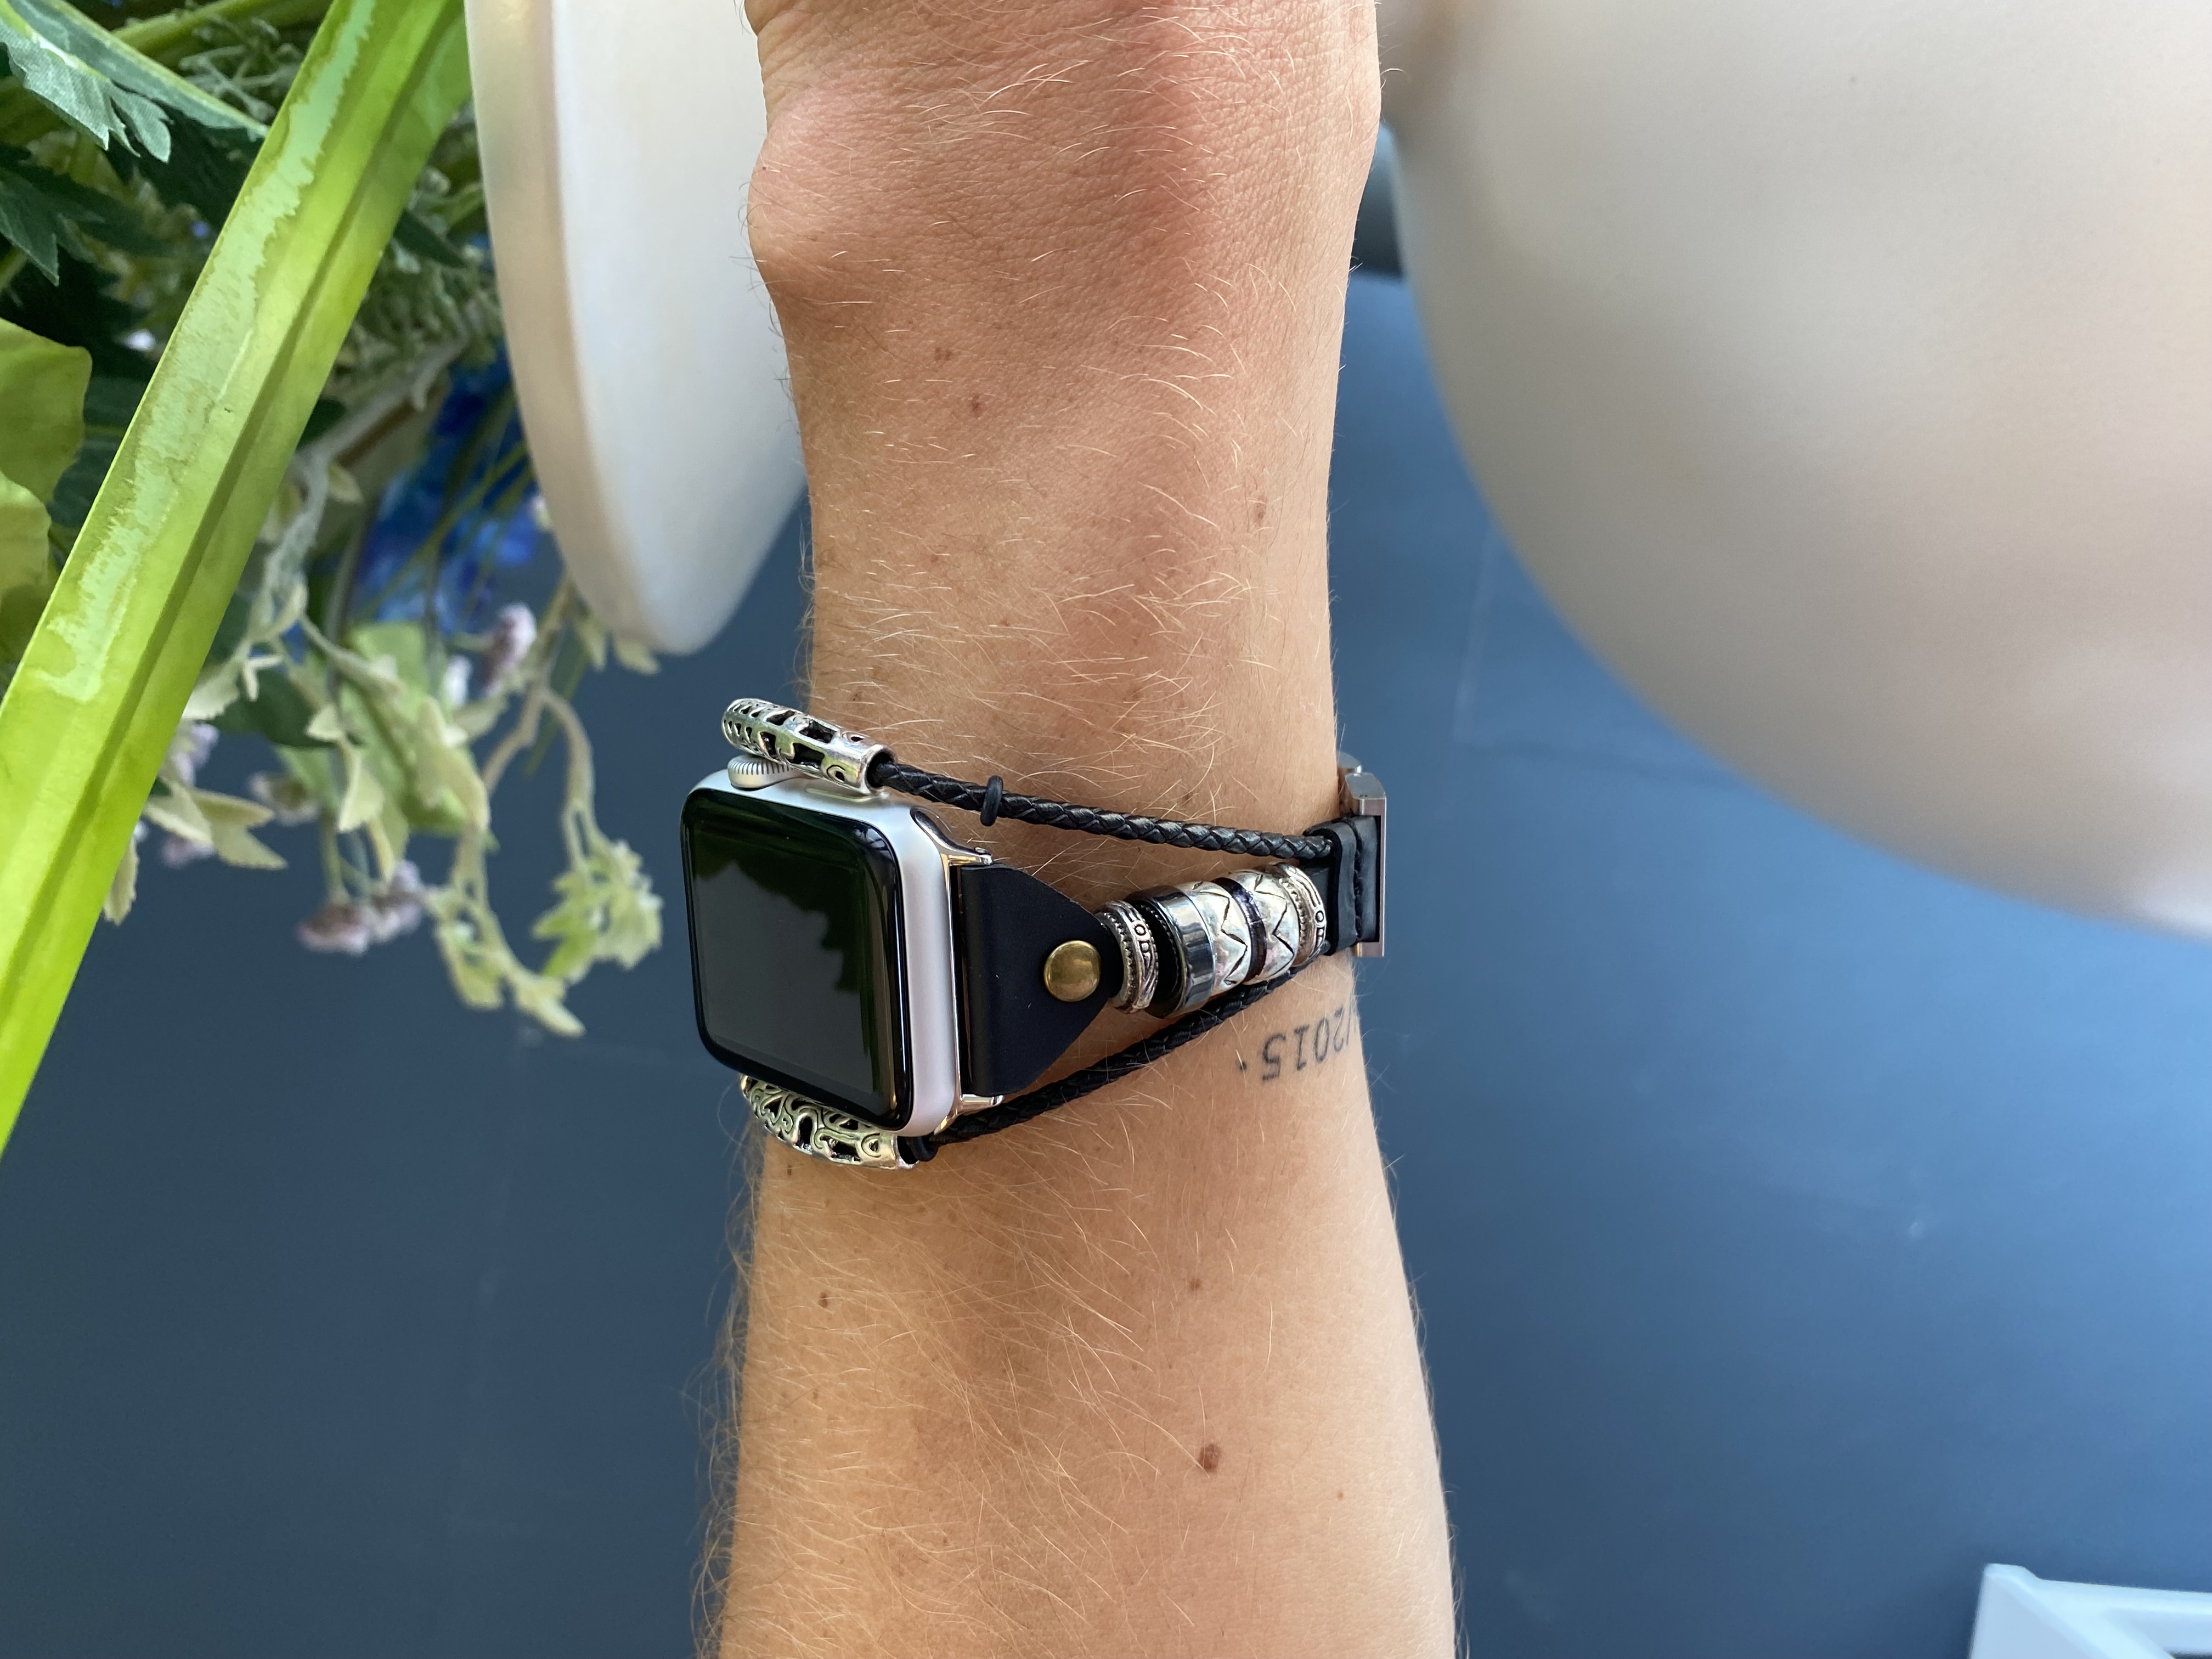 Correa de joyería de piel robusto para el Apple Watch - rosario negro